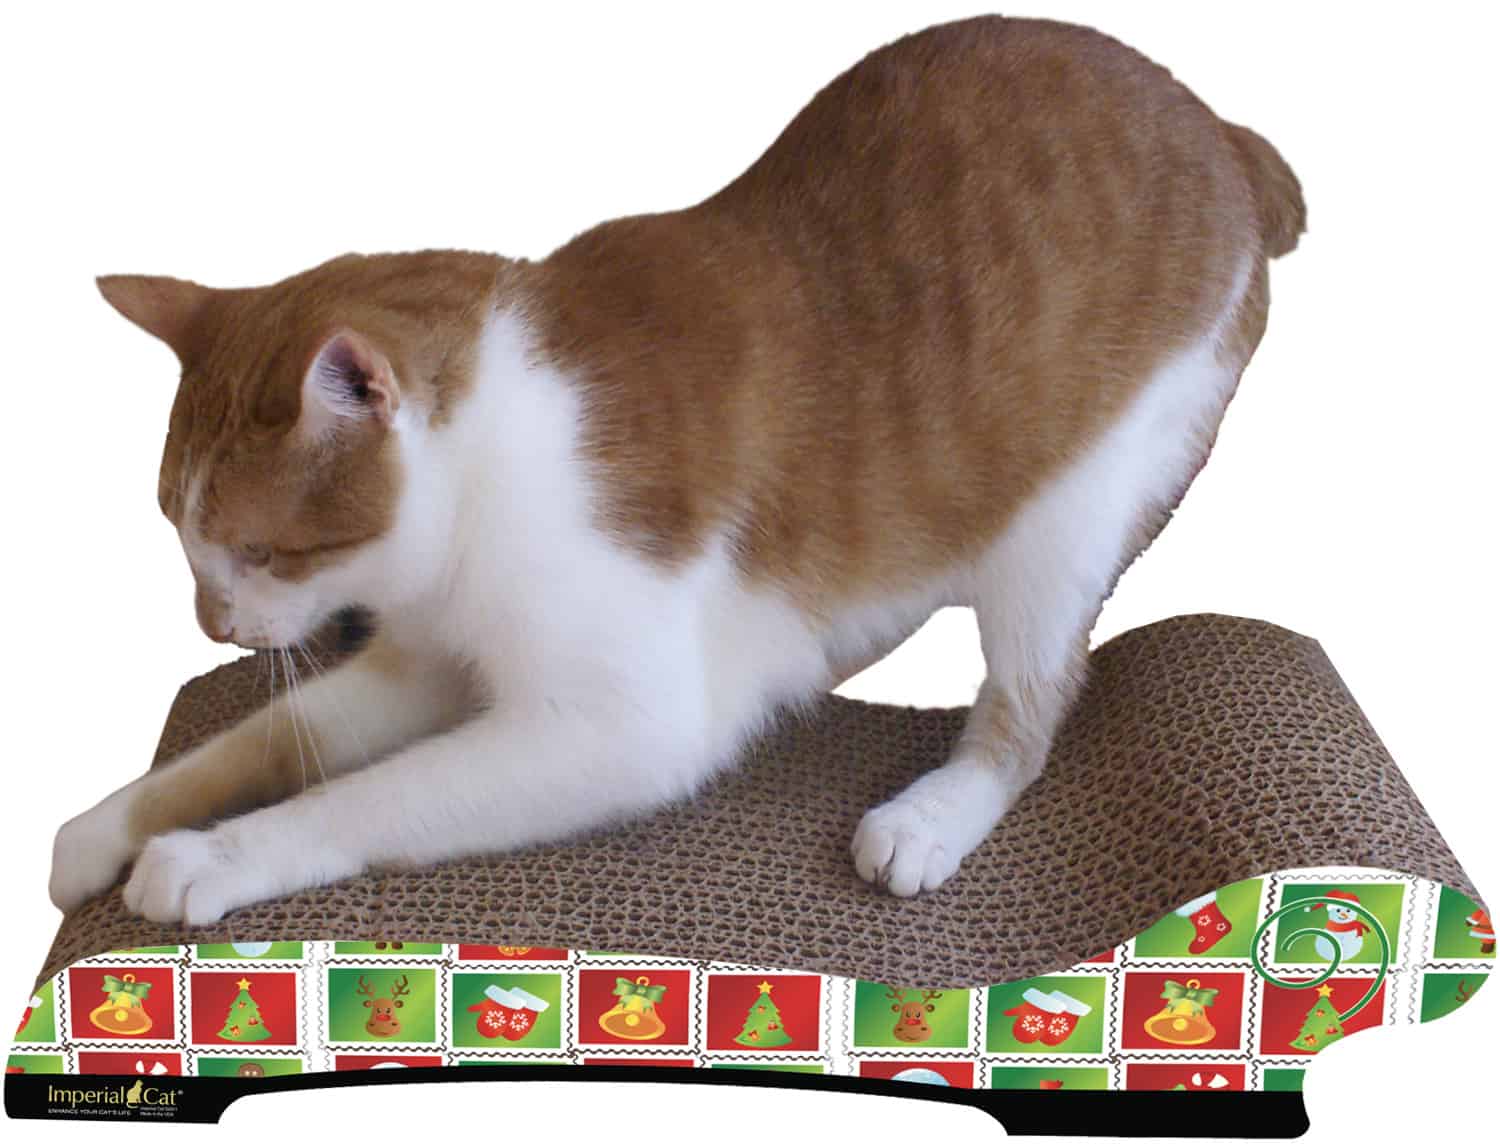 Imperial Cat Scratch n Shapes Scratcher Scratching Mat Organic Catnip Made n USA 